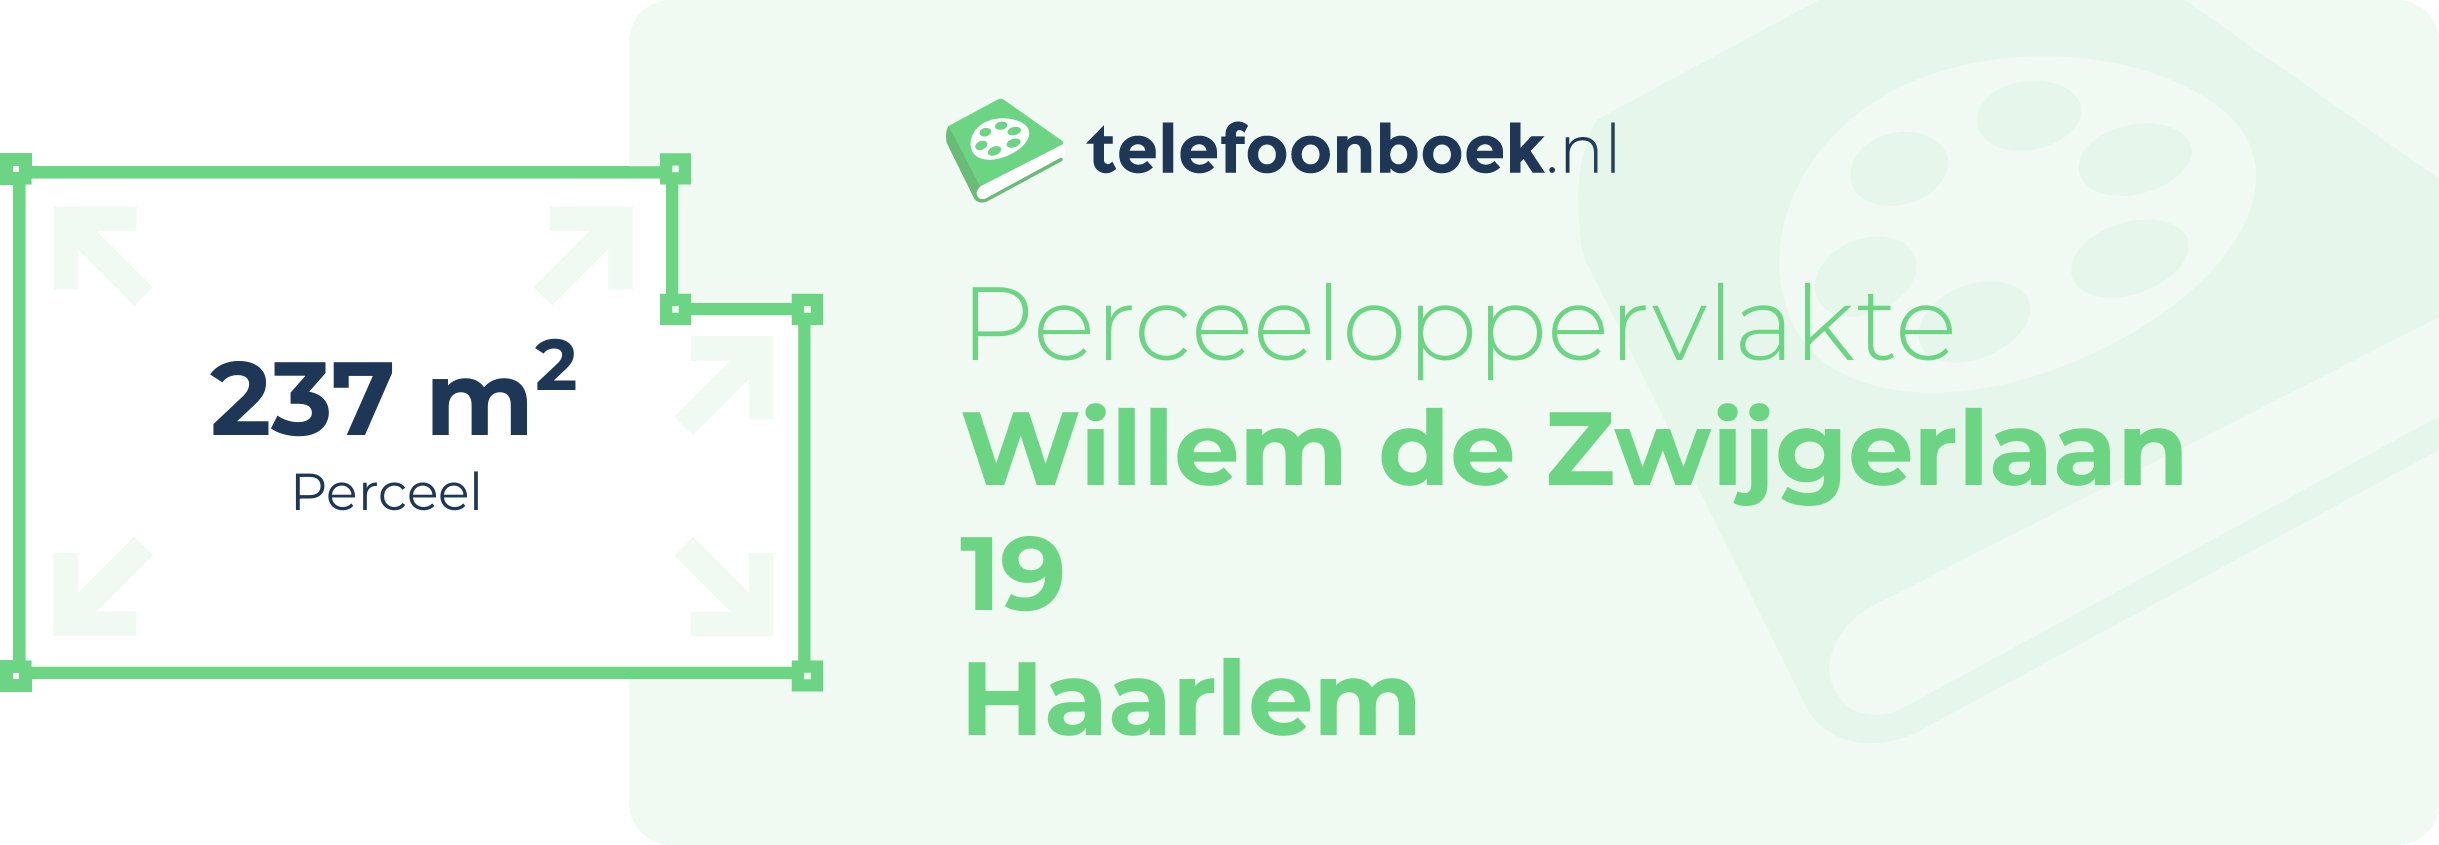 Perceeloppervlakte Willem De Zwijgerlaan 19 Haarlem